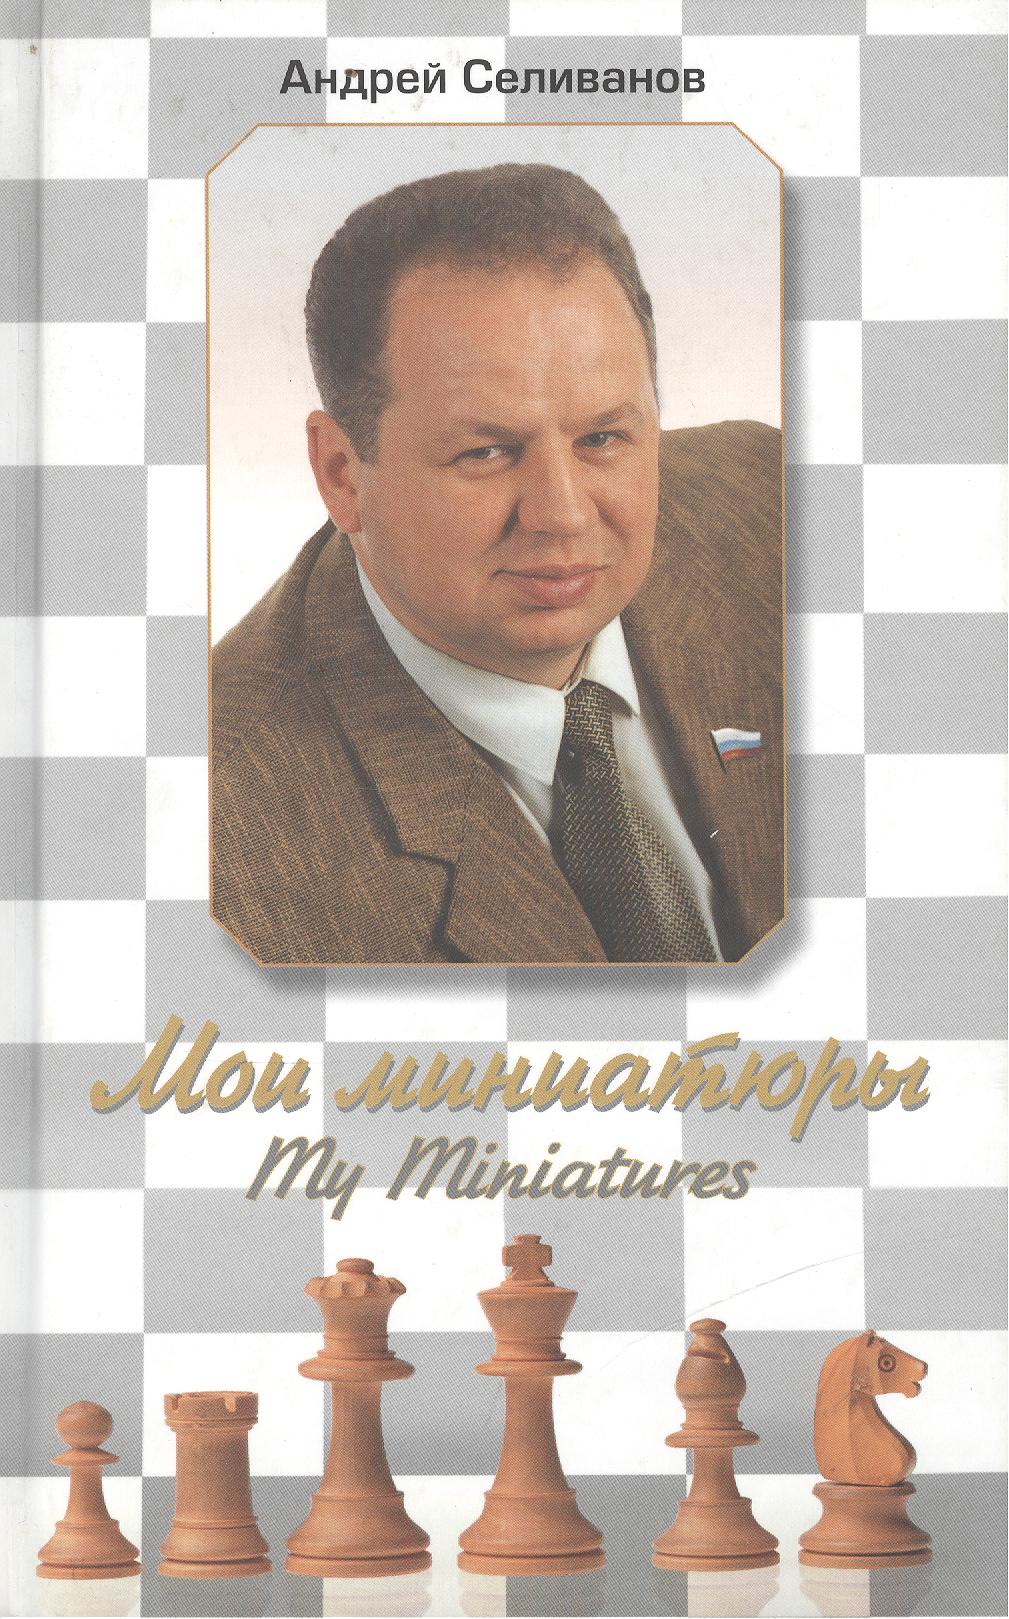 Селиванов Андрей Владимирович Мои миниатюры. My Miniatures